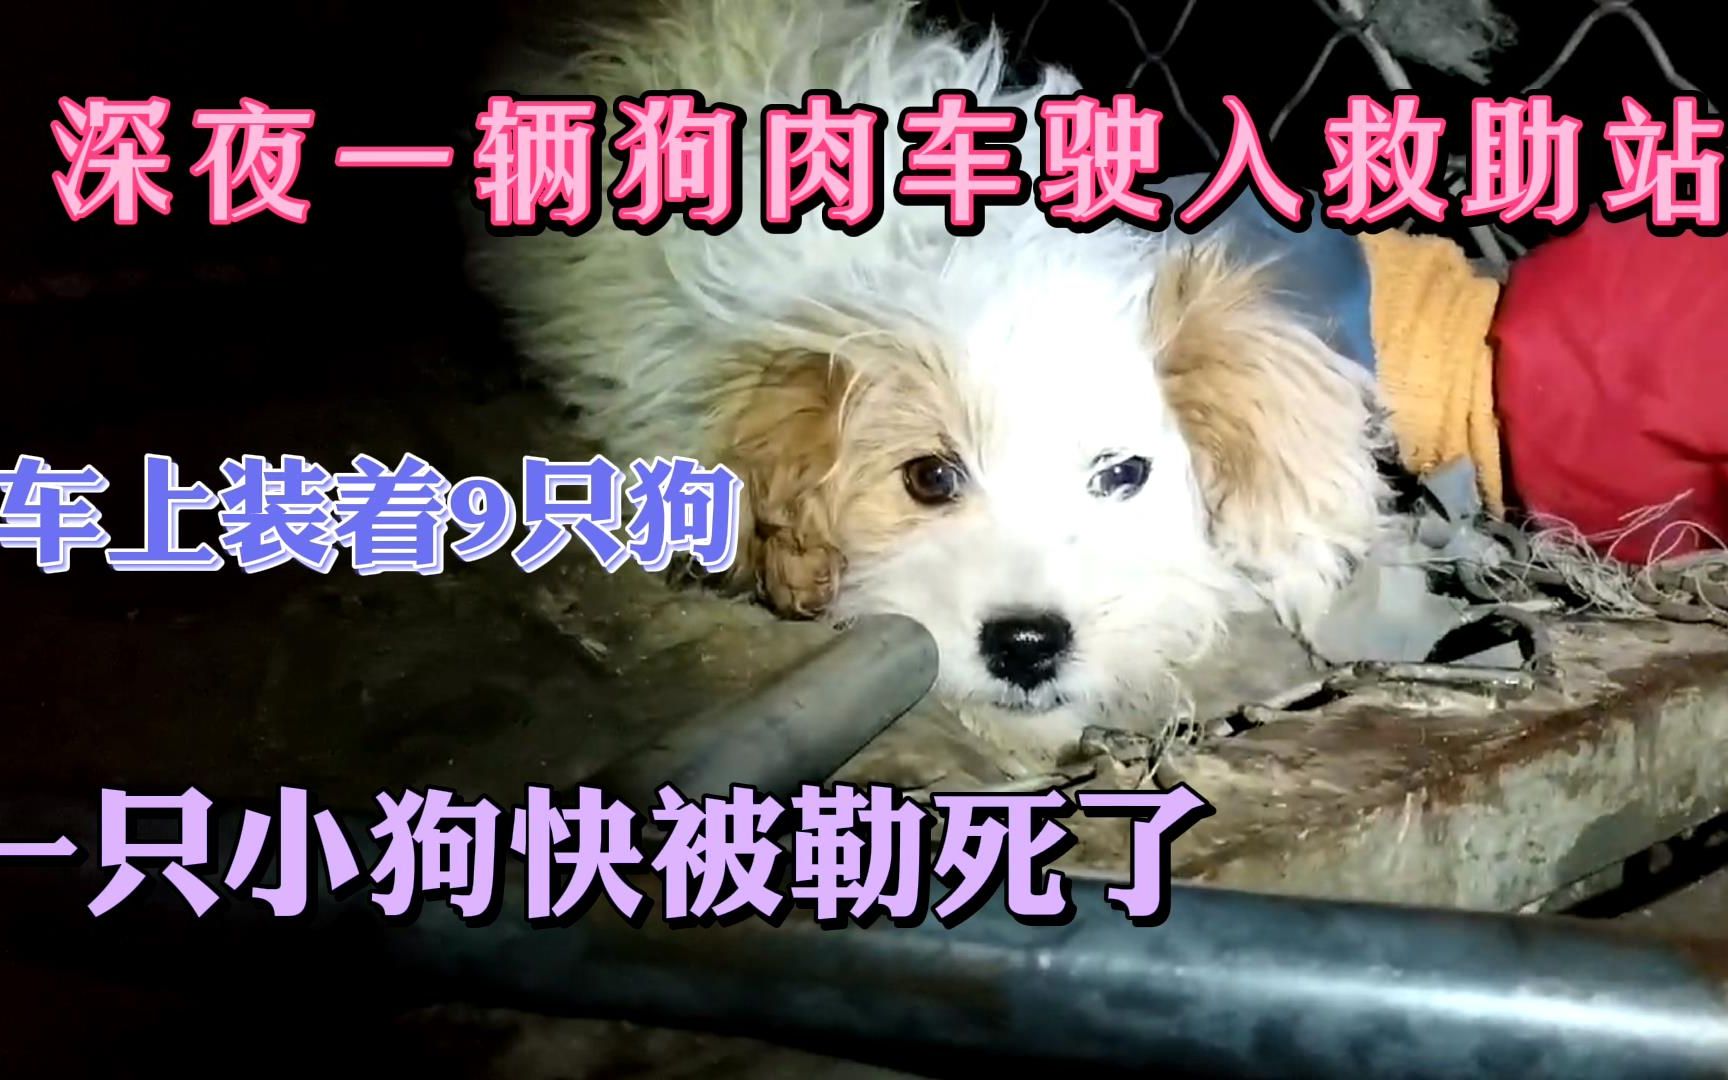 【哈尔滨市刘丽小动物救助站】深夜基地又迎来一车被救助的狗肉车上的狗狗。老年犬、幼犬，甚至品种犬。它们都被无情的卖到狗肉车上待宰，可怜可怜